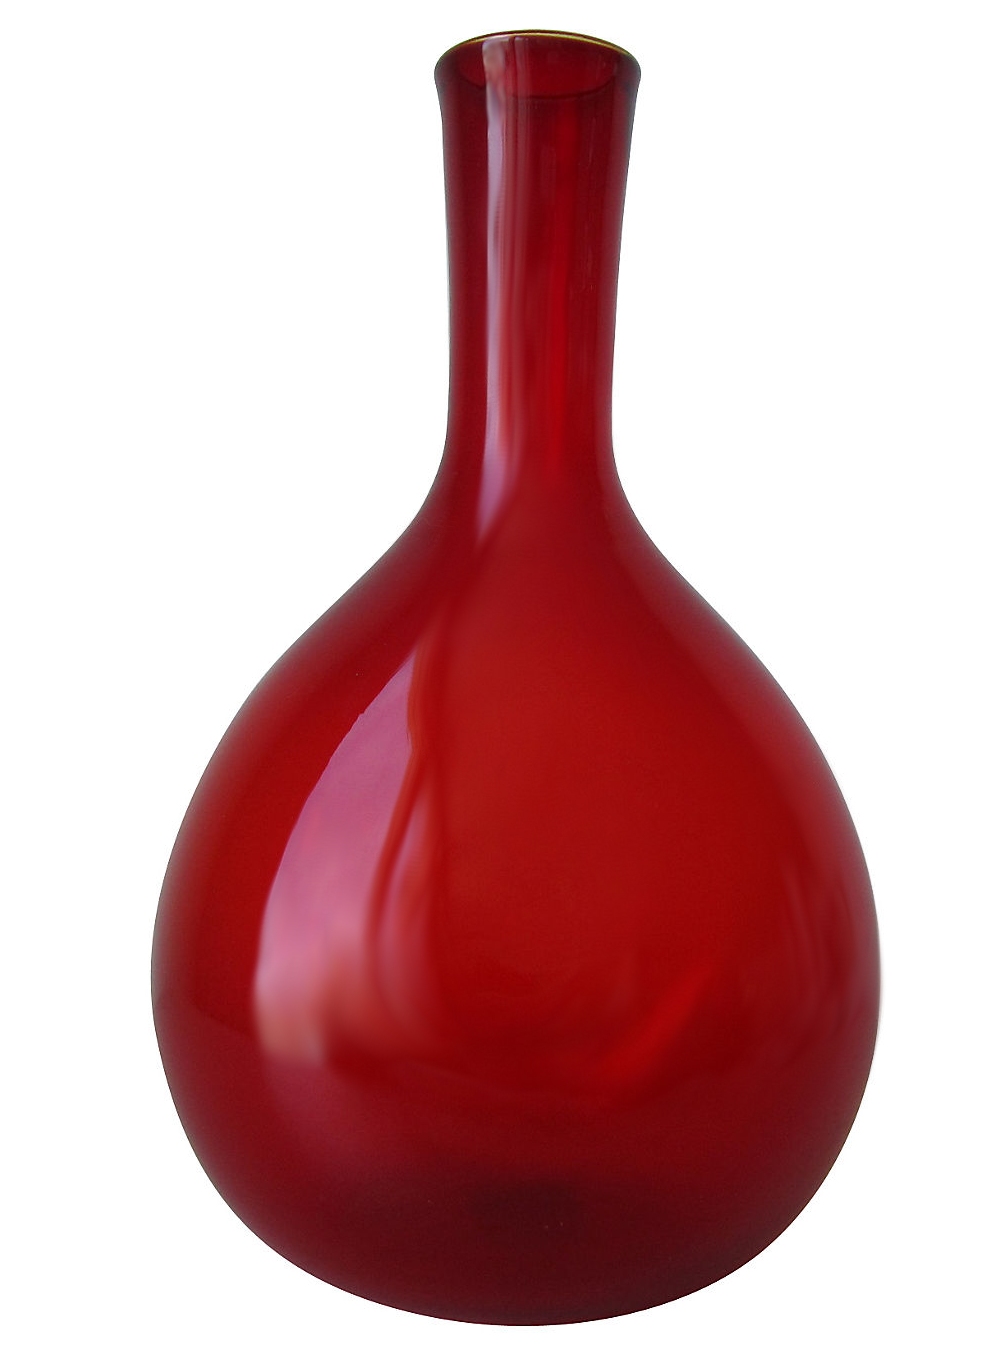 Free vintage Red bottle image - Graf X Quest